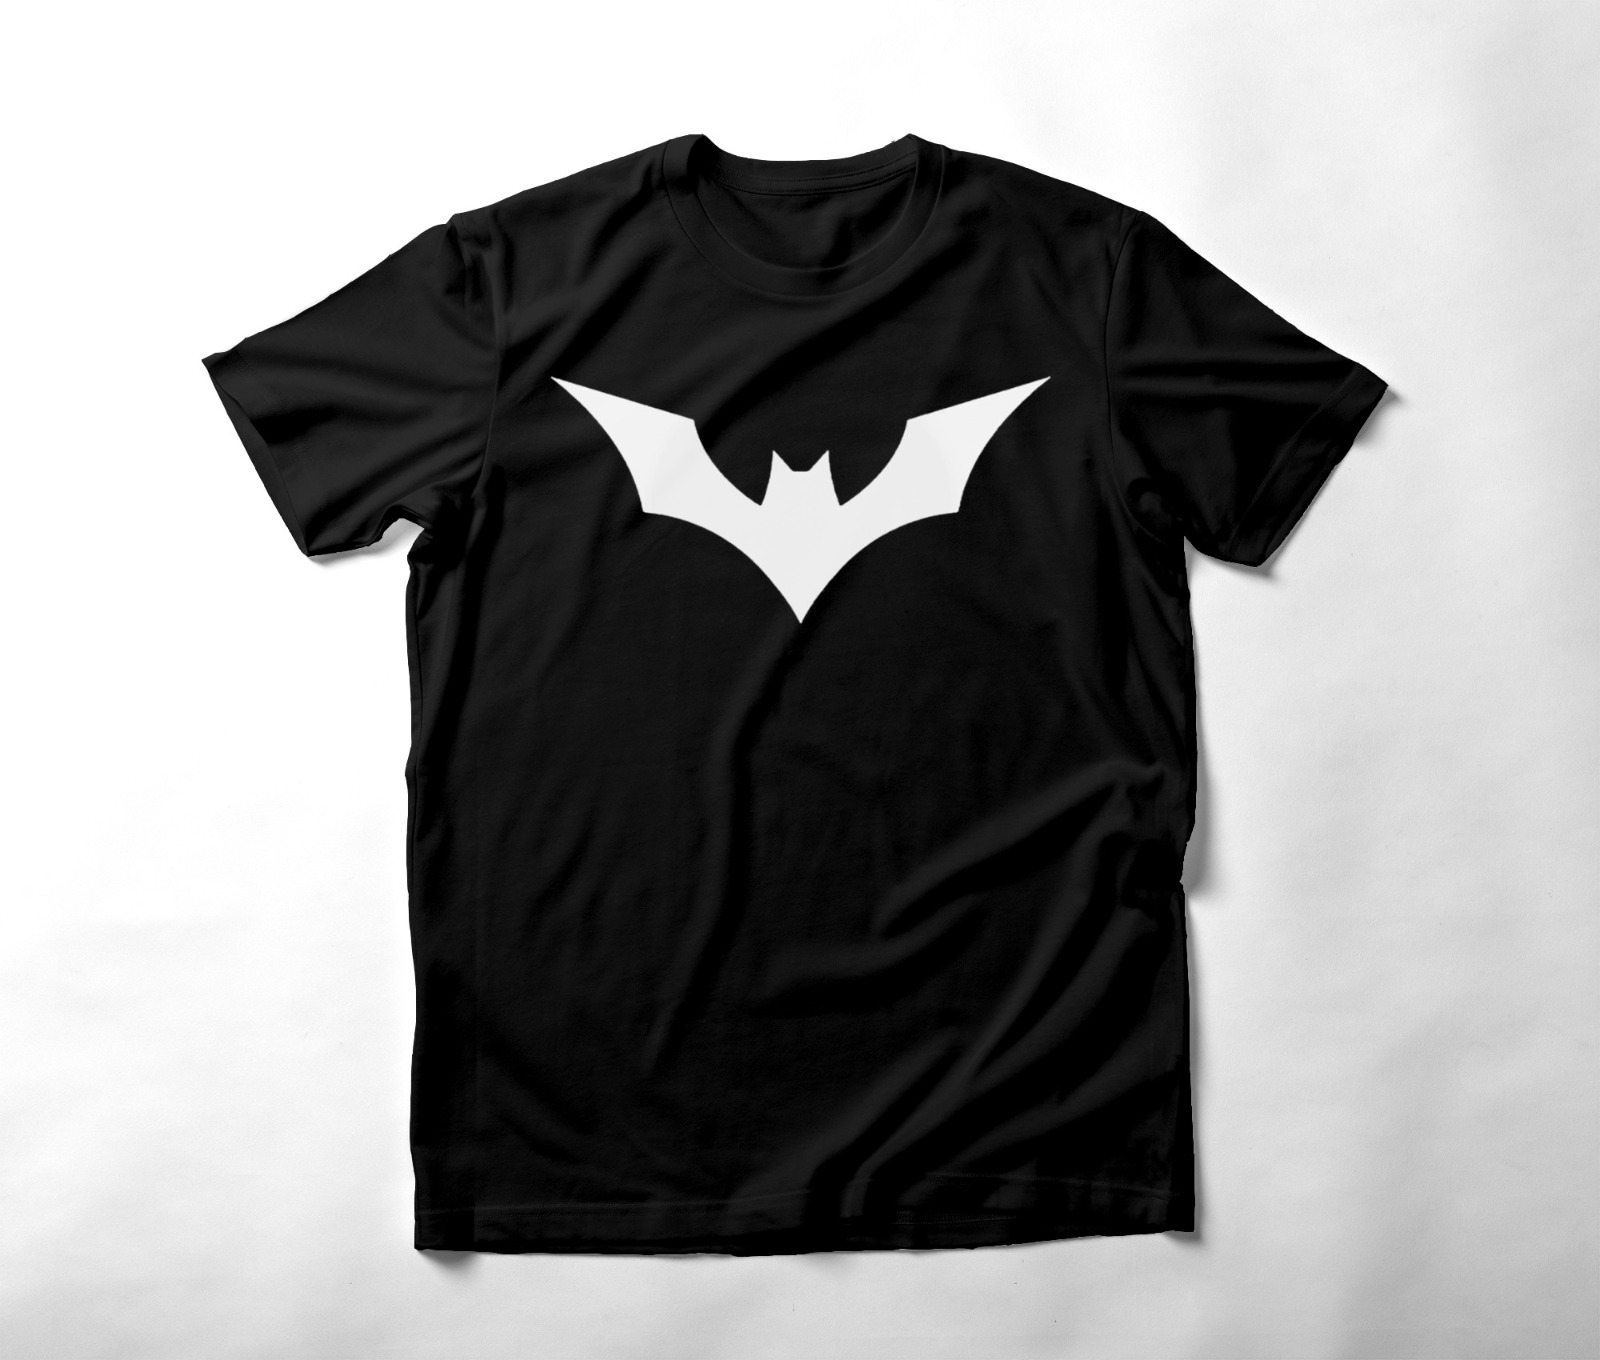   bat-man T-shirt 